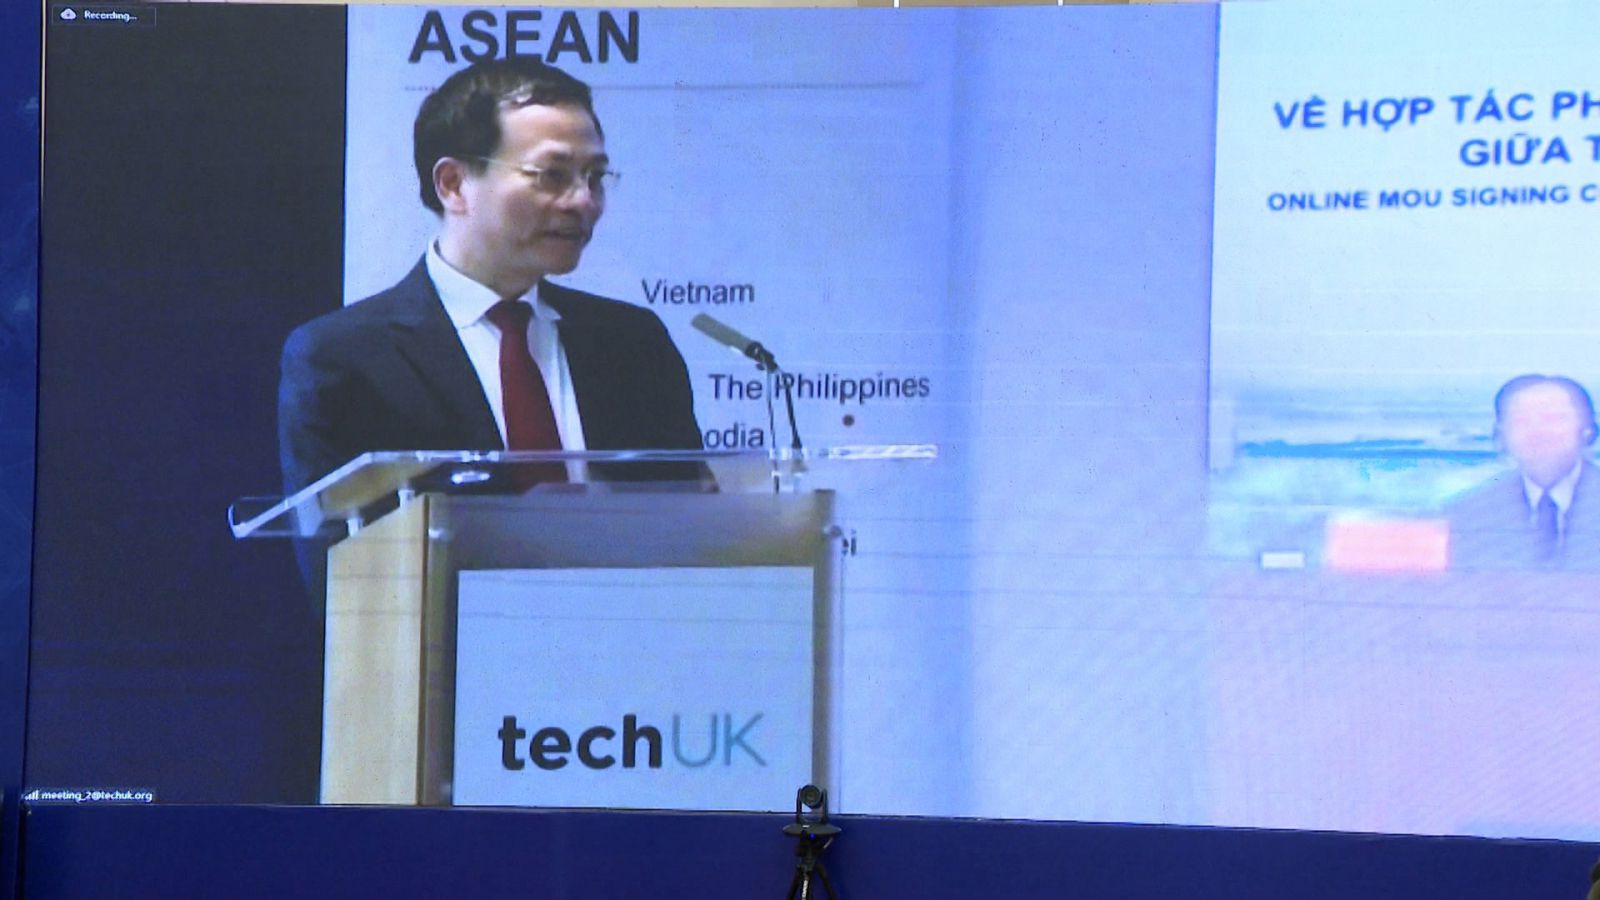 Bộ trưởng Bộ Thông tin và Truyền thông, Nguyễn Mạnh Hùng phát biểu tại điểm cầu Vương quốc Anh.